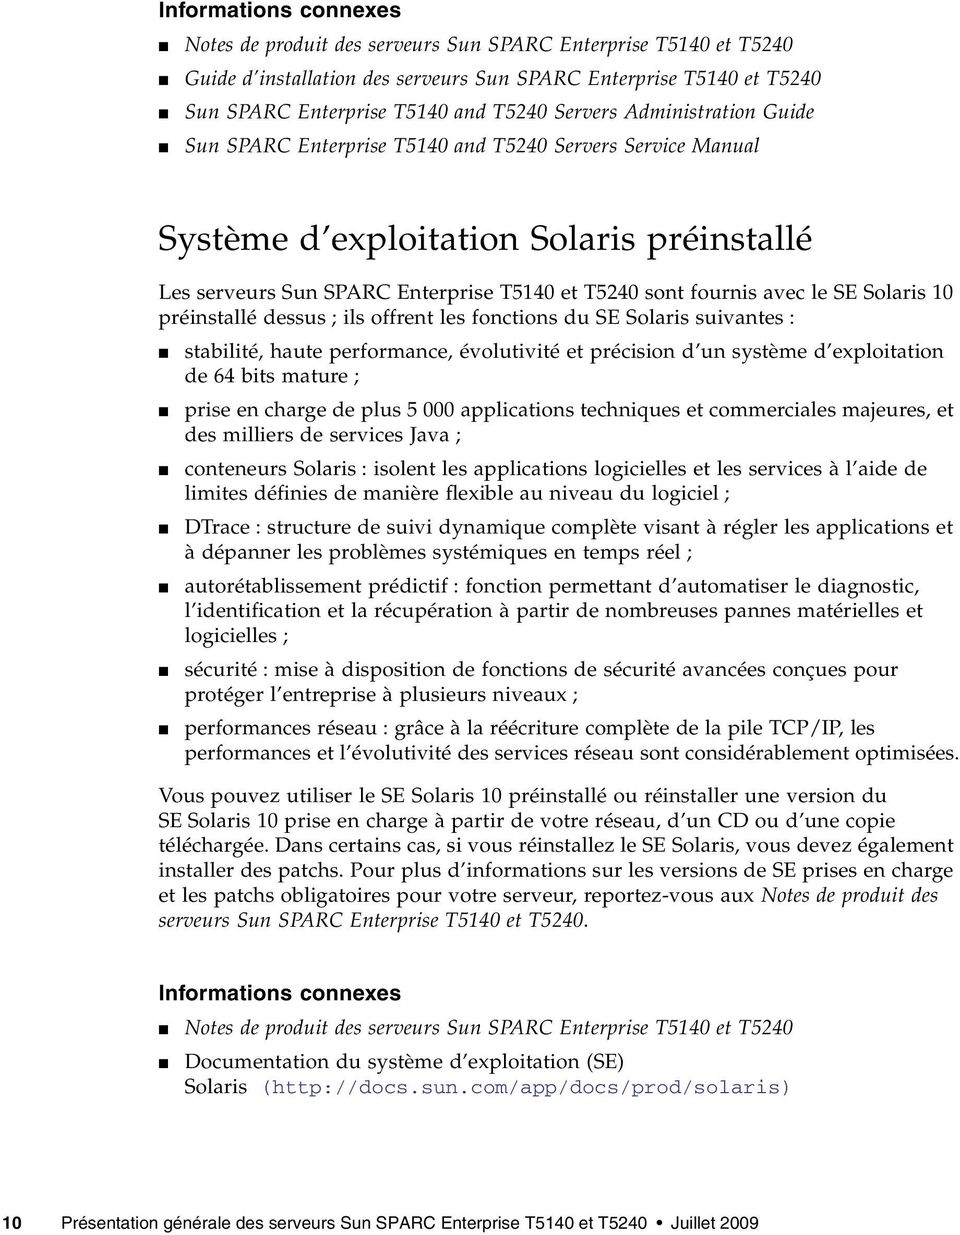 le SE Solaris 10 préinstallé dessus ; ils offrent les fonctions du SE Solaris suivantes : stabilité, haute performance, évolutivité et précision d un système d exploitation de 64 bits mature ; prise